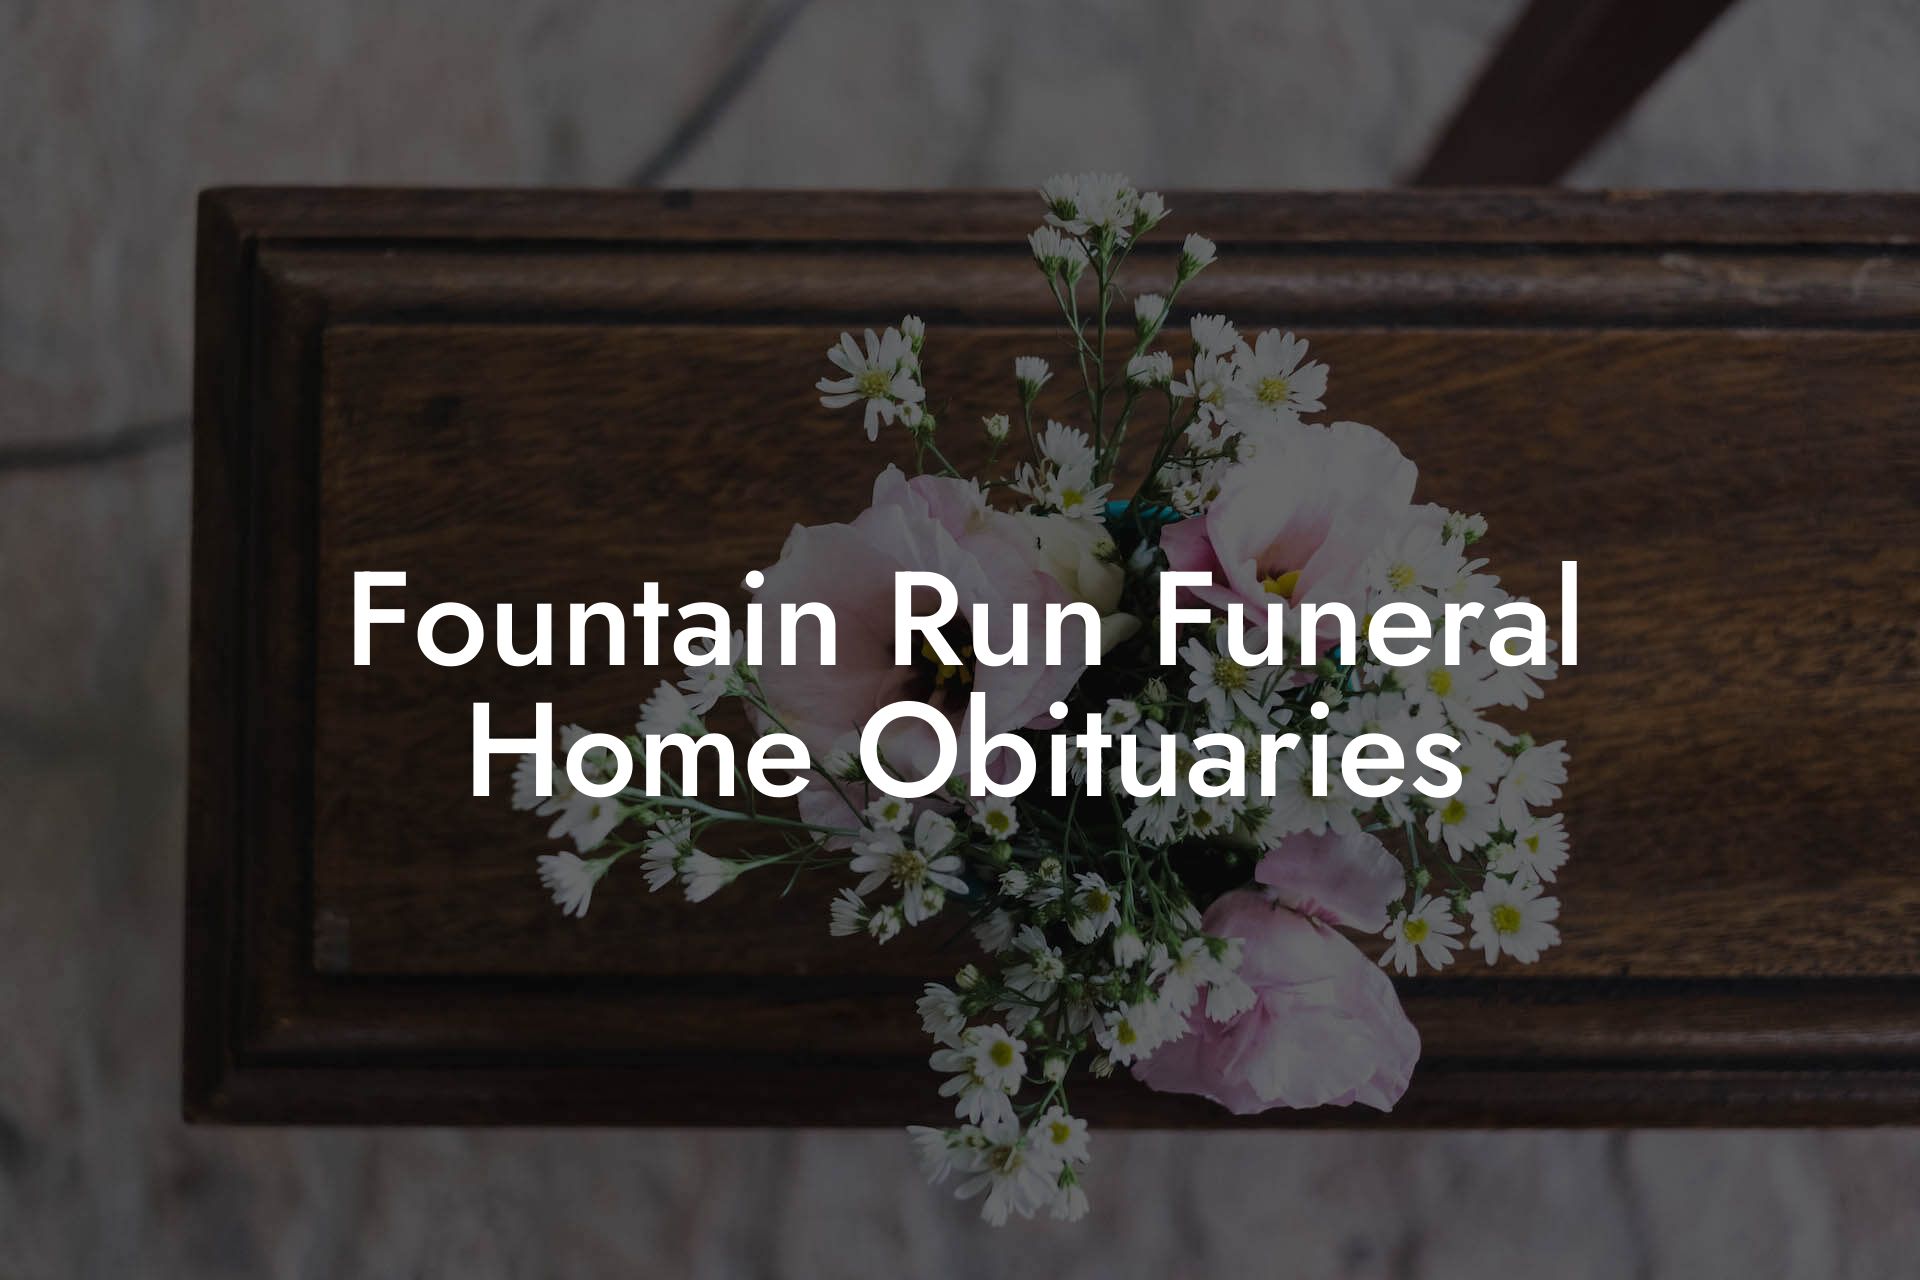 Fountain Run Funeral Home Obituaries